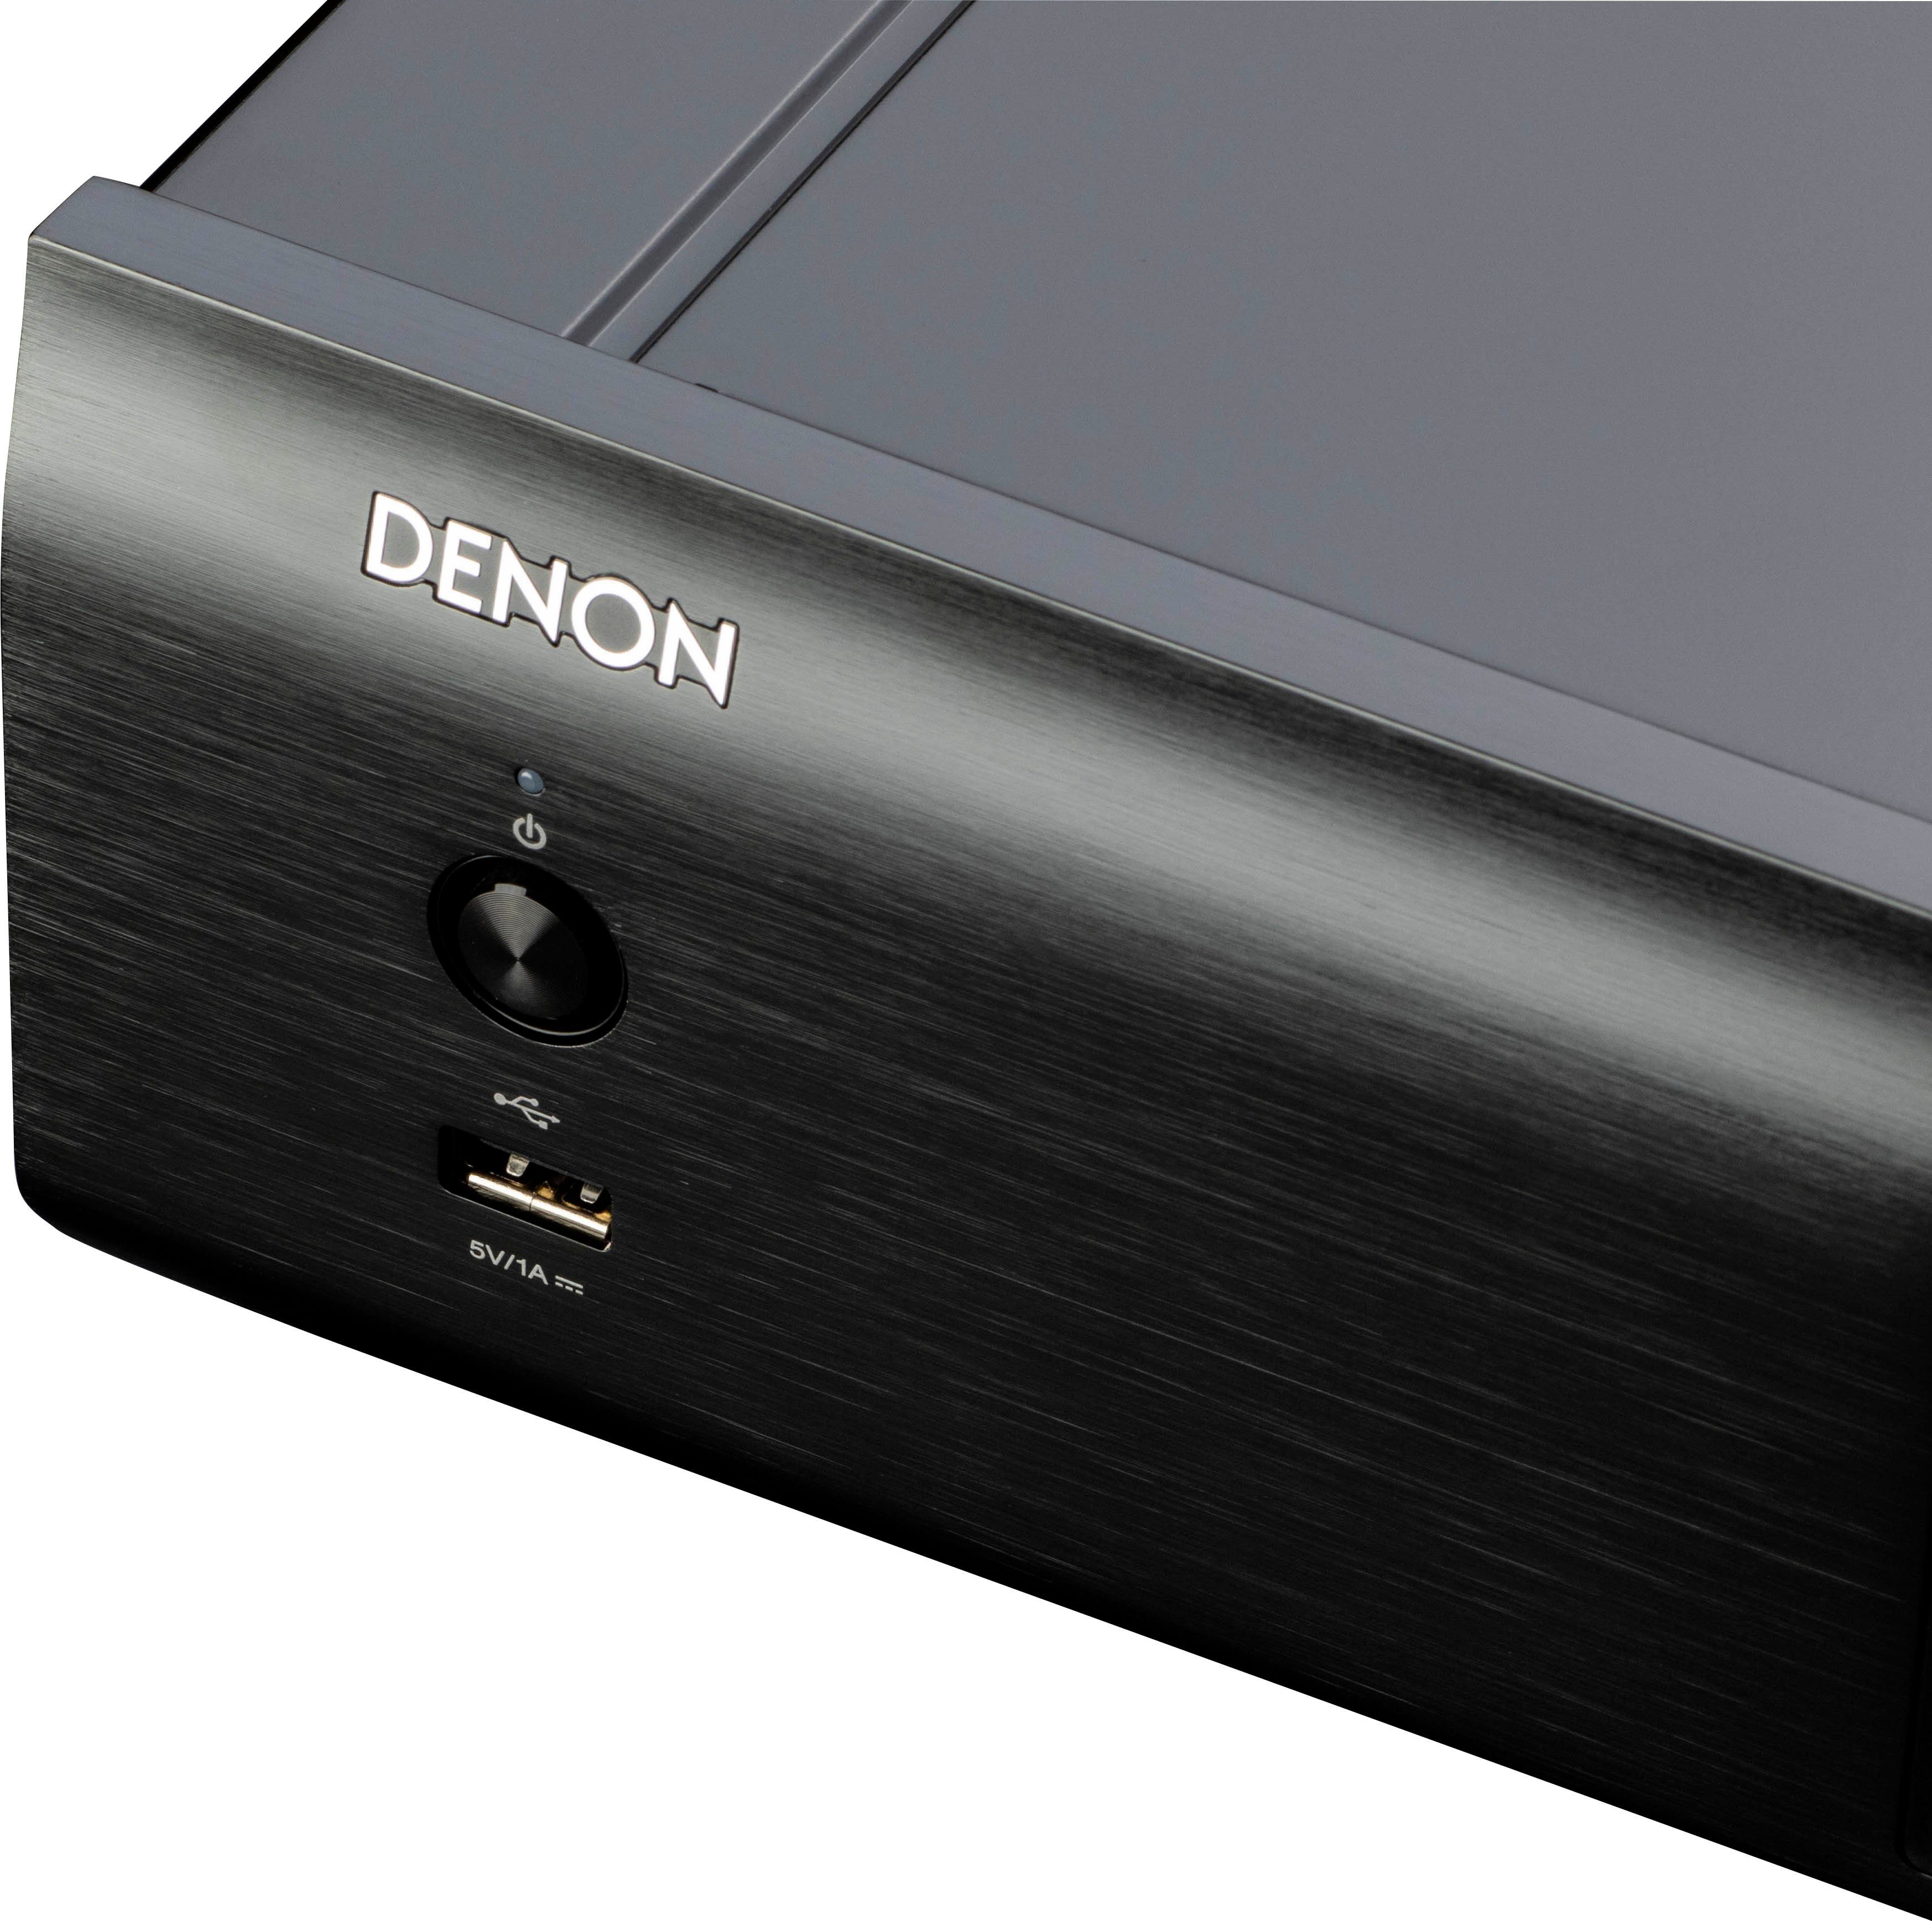 CD-Player DCD-900NE (USB-Audiowiedergabe) schwarz Denon